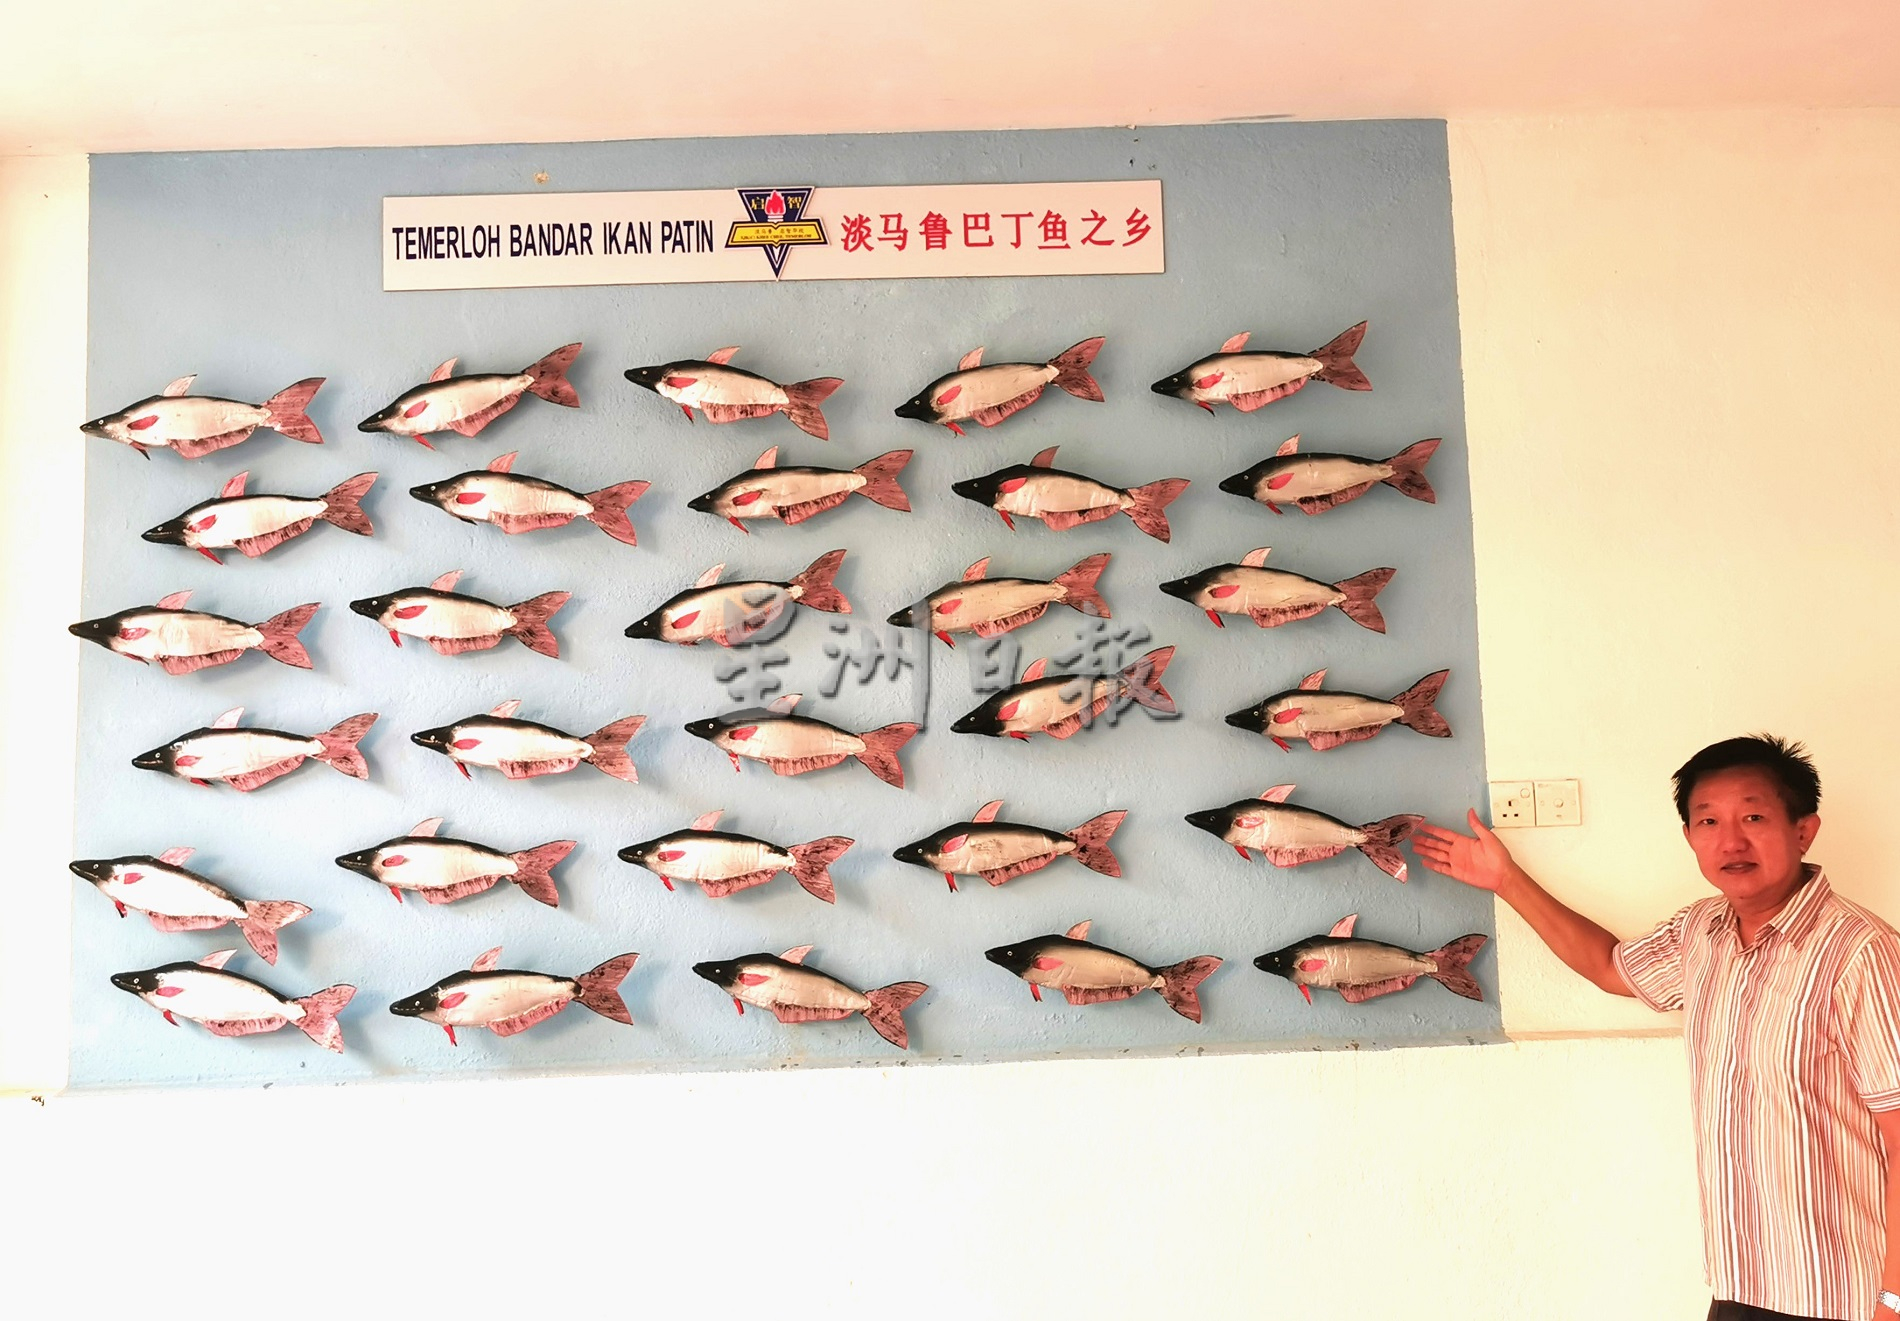 淡马鲁启智华小设立“巴丁鱼”模型角落，以让学生们更加了解淡马鲁为“巴丁鱼”之乡历史。